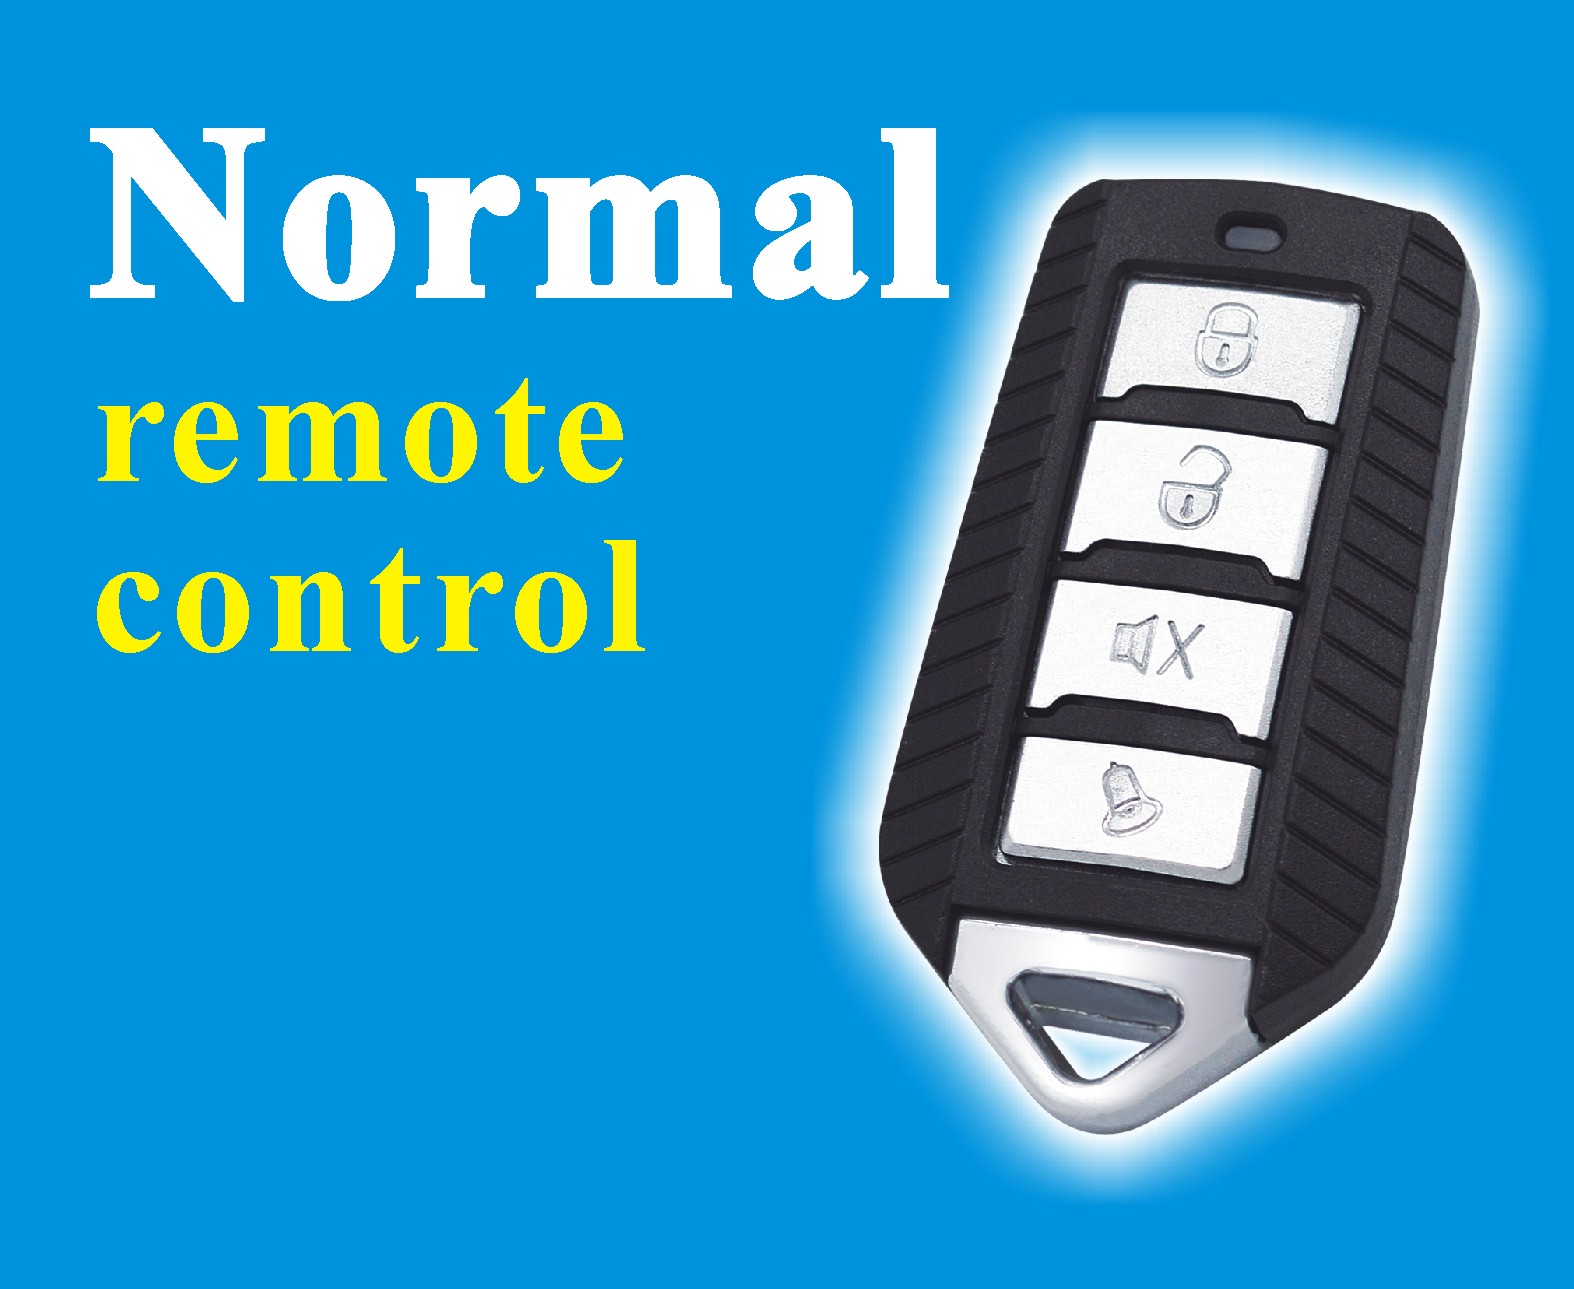 Normal remote control